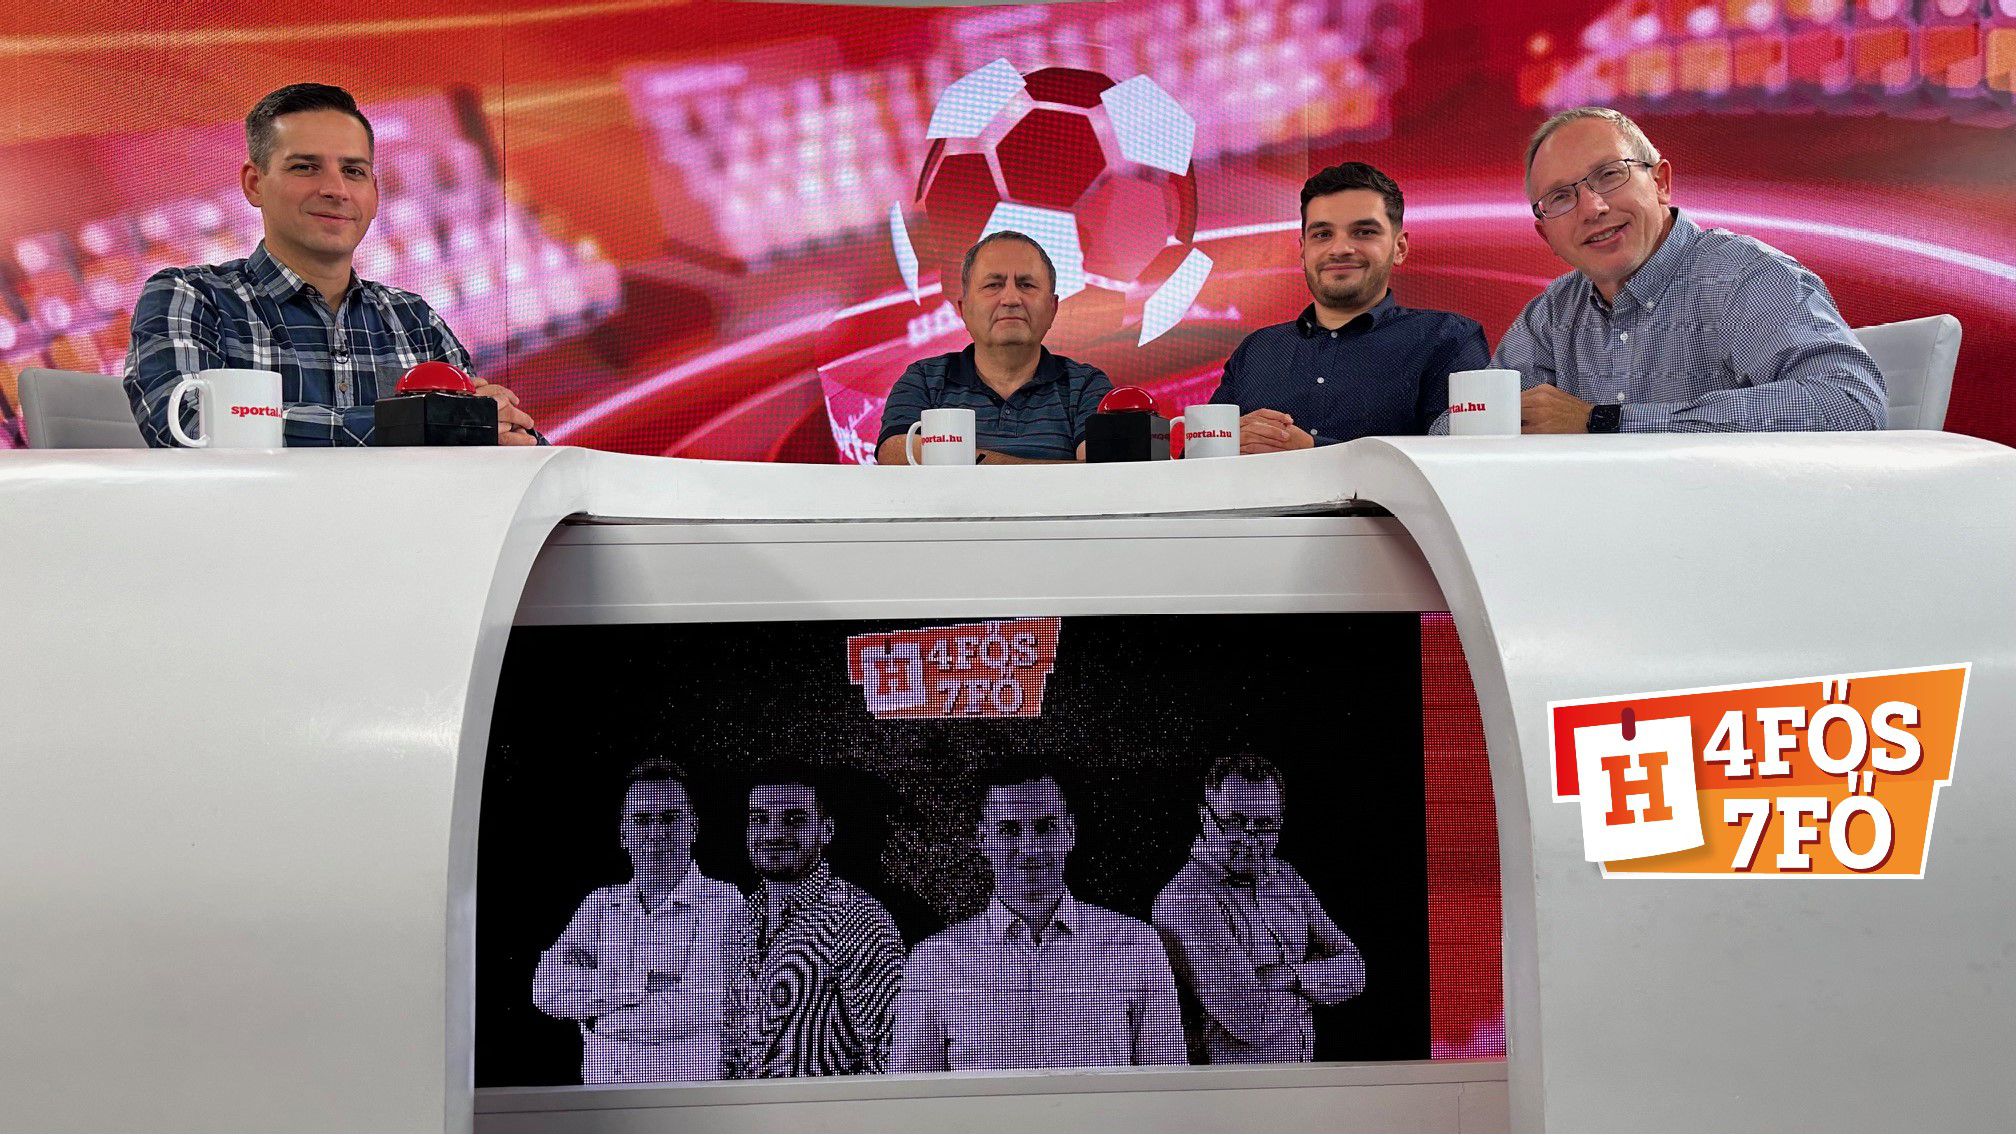 A Sportál Tv stúdiójában: Cselleng Ádám, Szekeres Tamás, Cseh Benjámin és Csurka Gergely